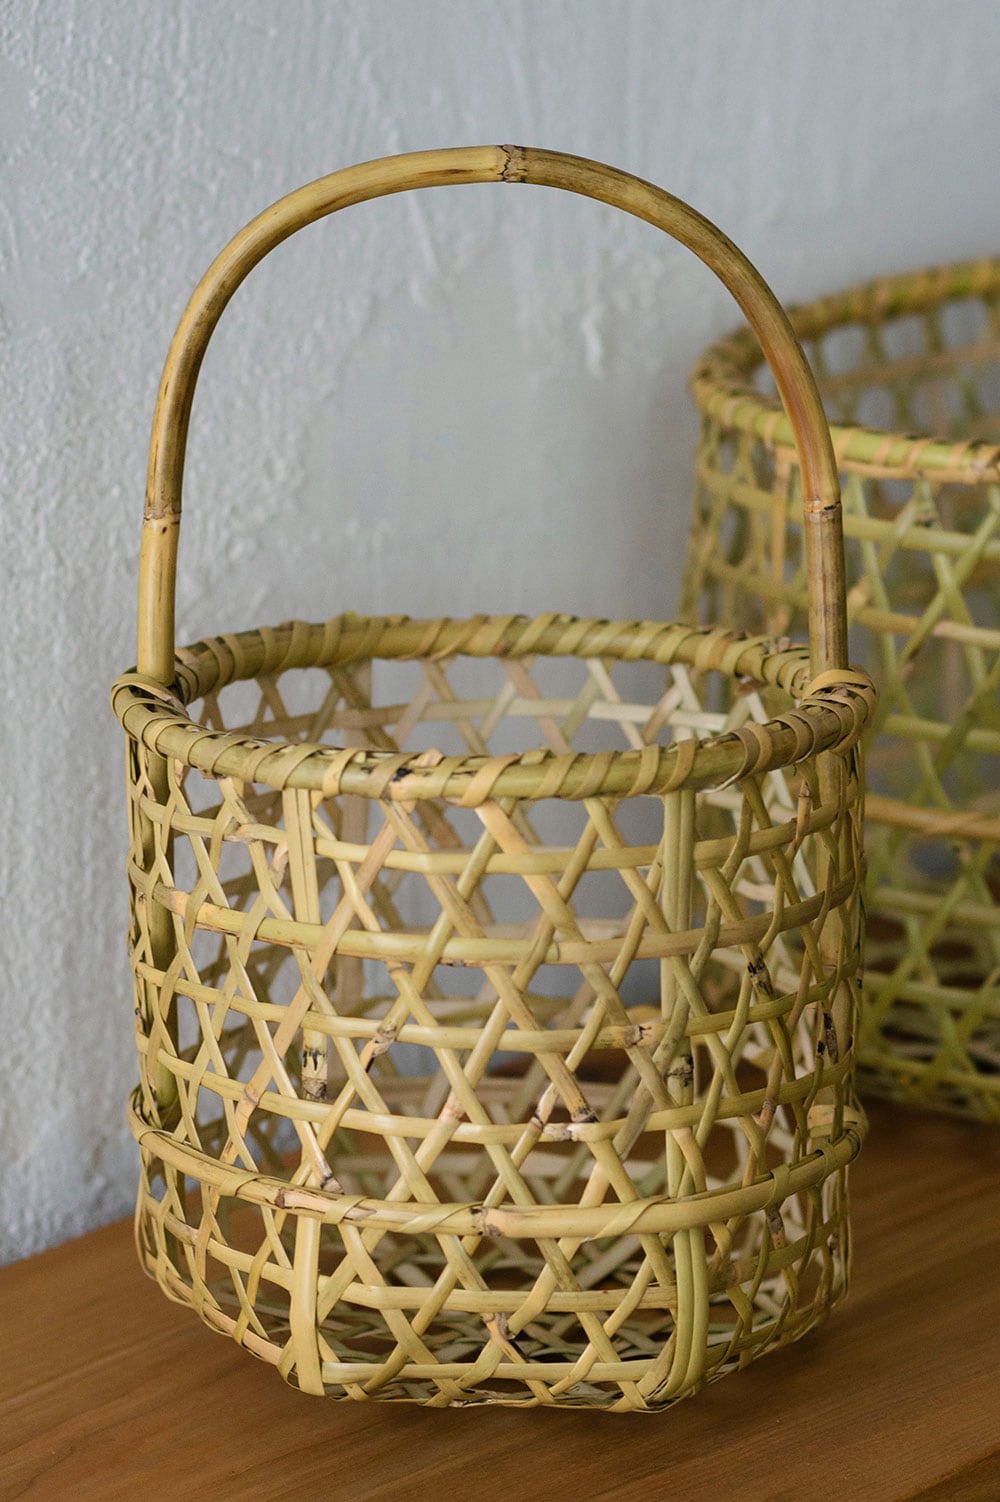 ハンドバッグにもちょうどよさそうな円筒形の根曲がり竹の手提げ籠。